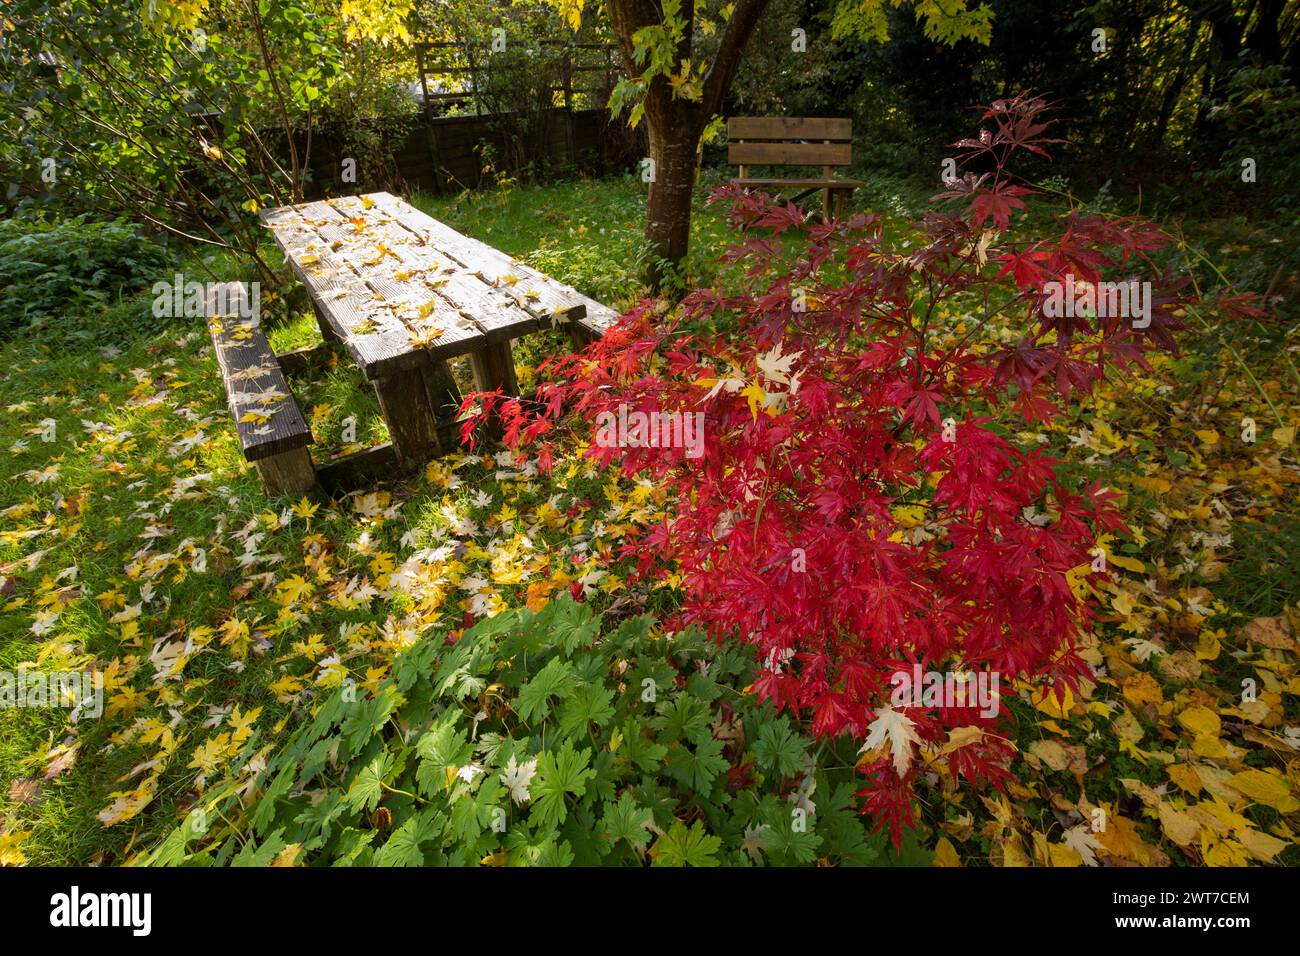 Scène de jardin en automne avec un palmatum d'érable japonais Acer 'atropurpureum' et des bancs. Powys, pays de Galles. Octobre. Banque D'Images